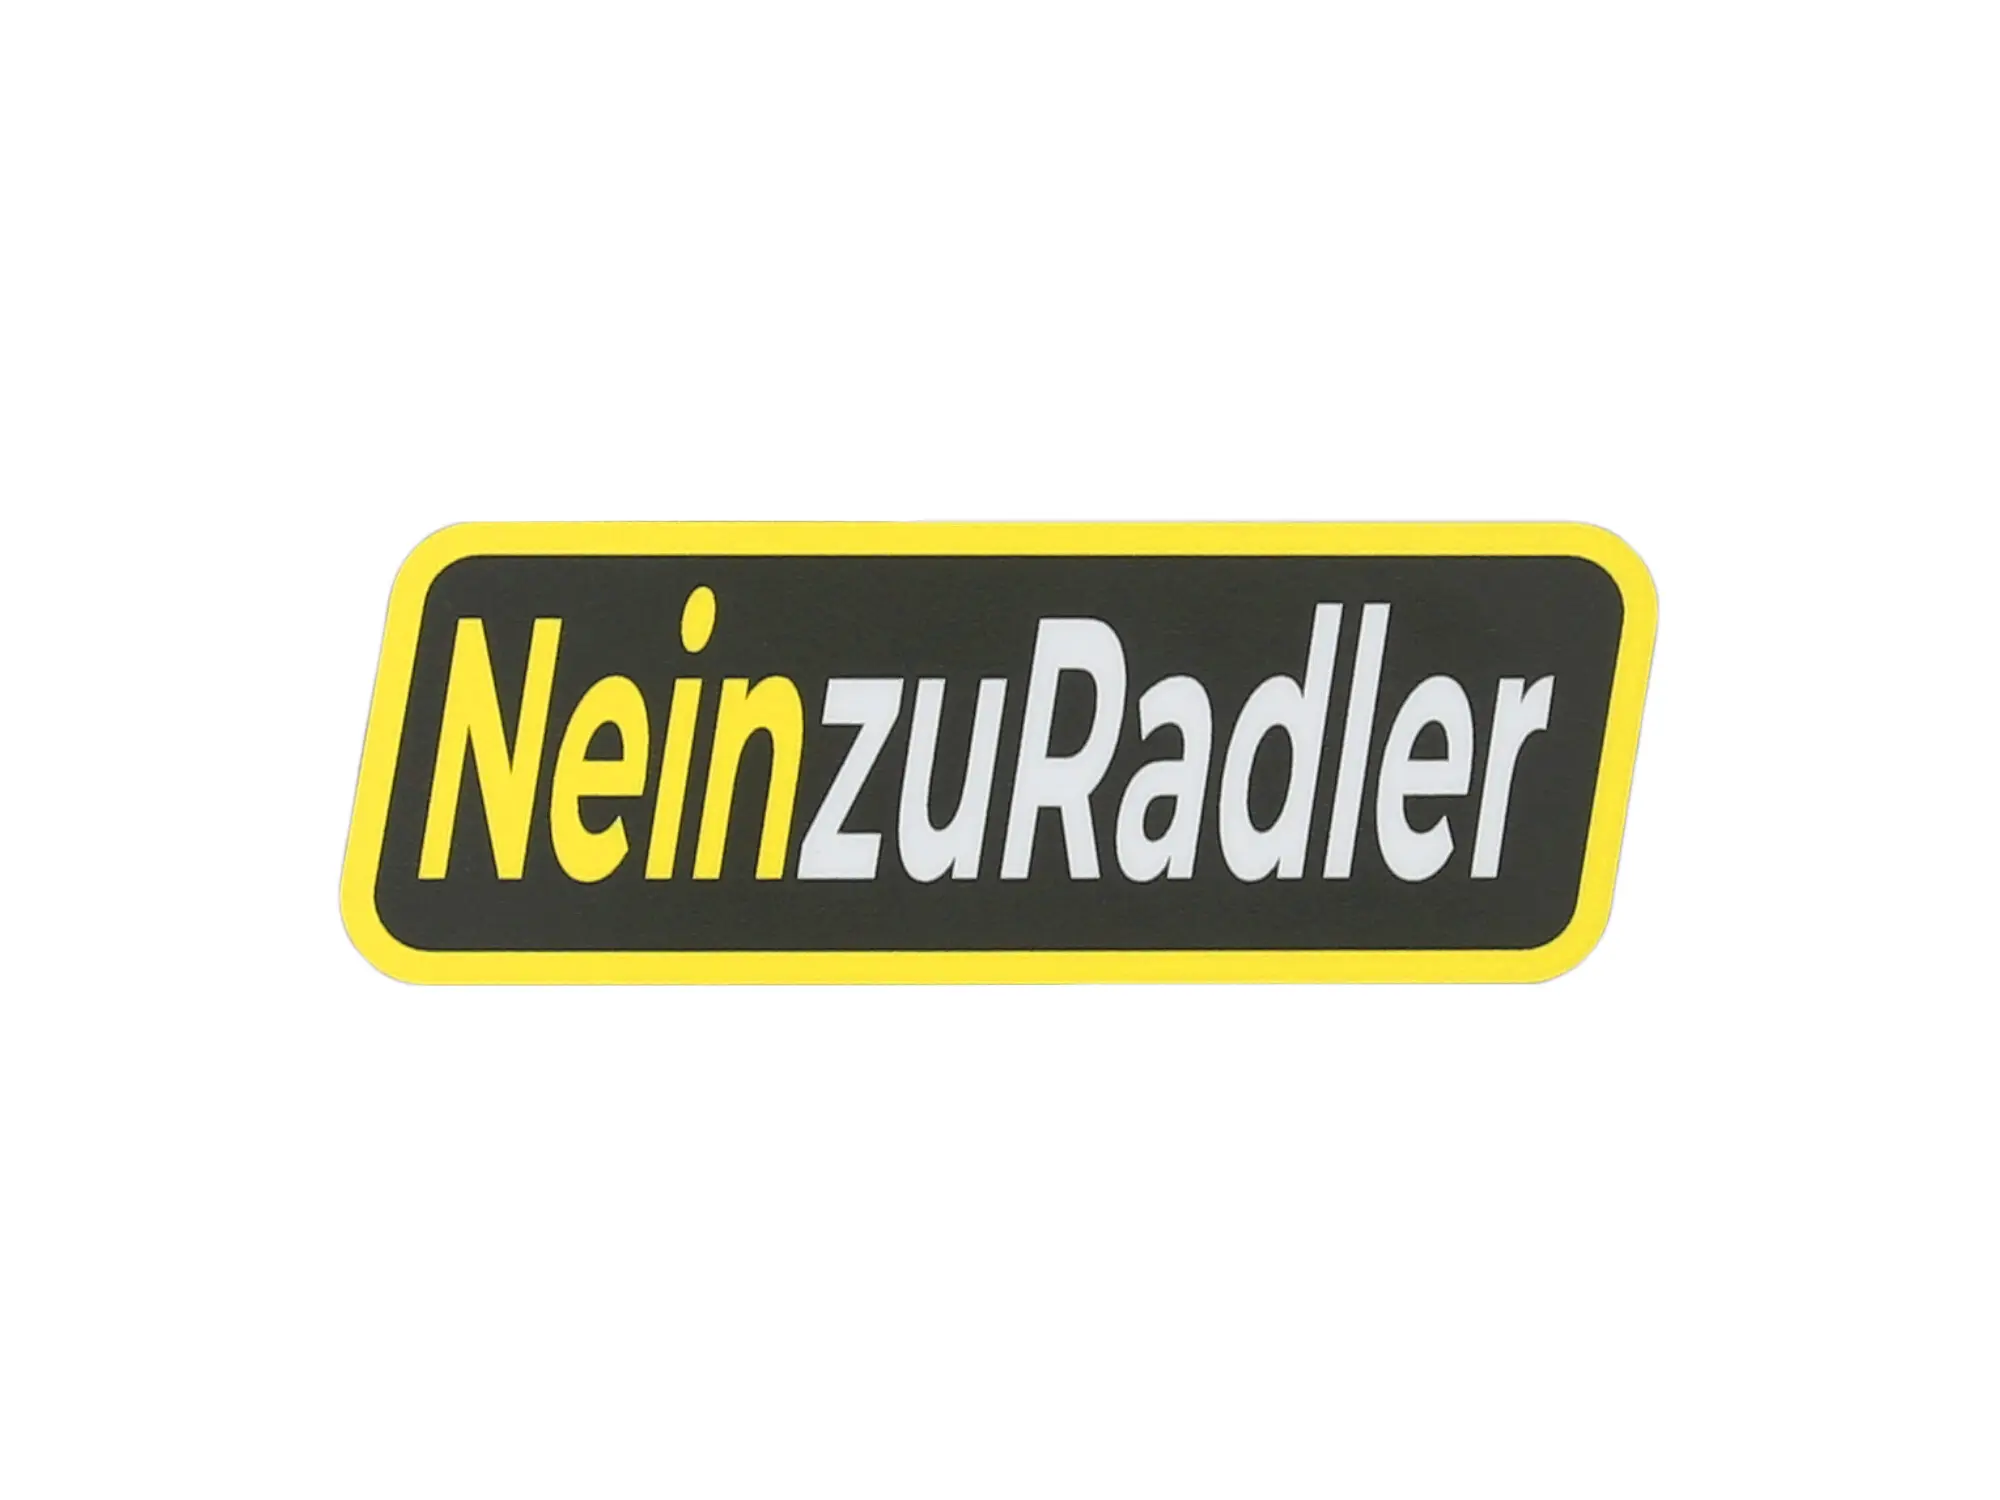 Aufkleber - "NeinzuRadler" Schwarz/Gelb/Weiß, Art.-Nr.: 10071901 - Bild 1